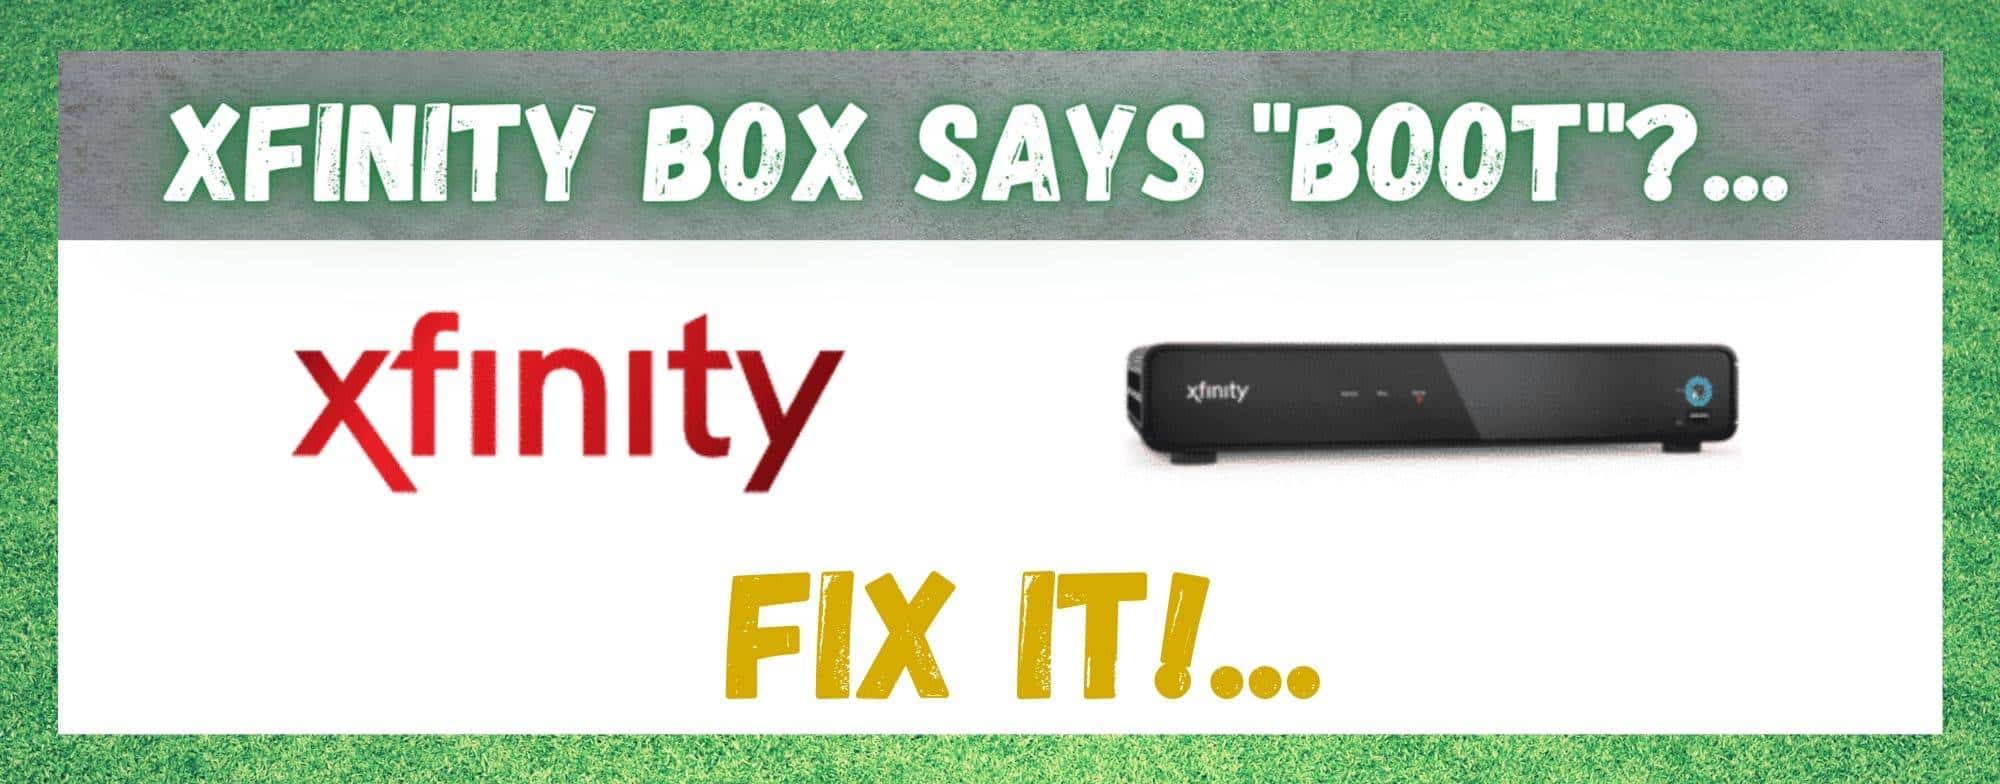 Xfinity Box-ն ասում է, որ Boot-ը շտկելու 4 եղանակ